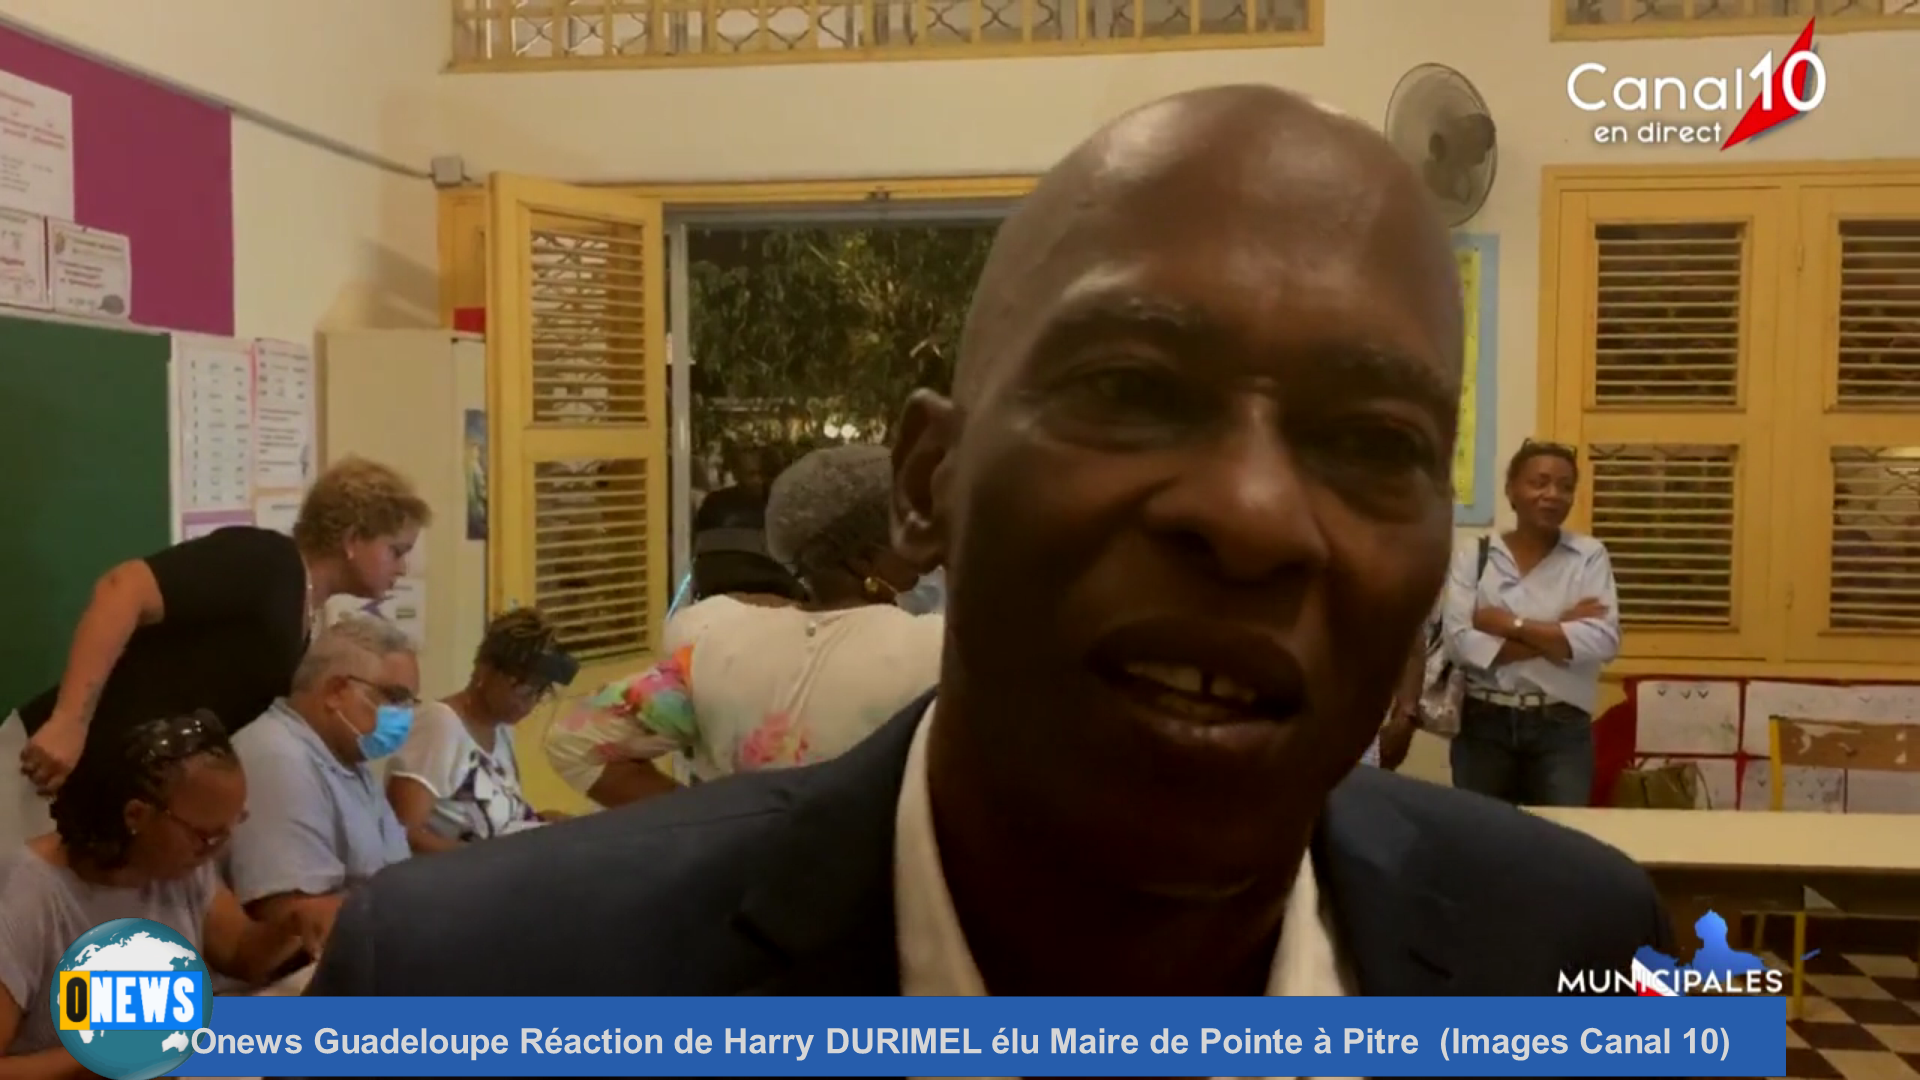 Onews Guadeloupe Réaction de Harry DURIMEL élu Maire de Pointe à Pitre (Images Canal 10)